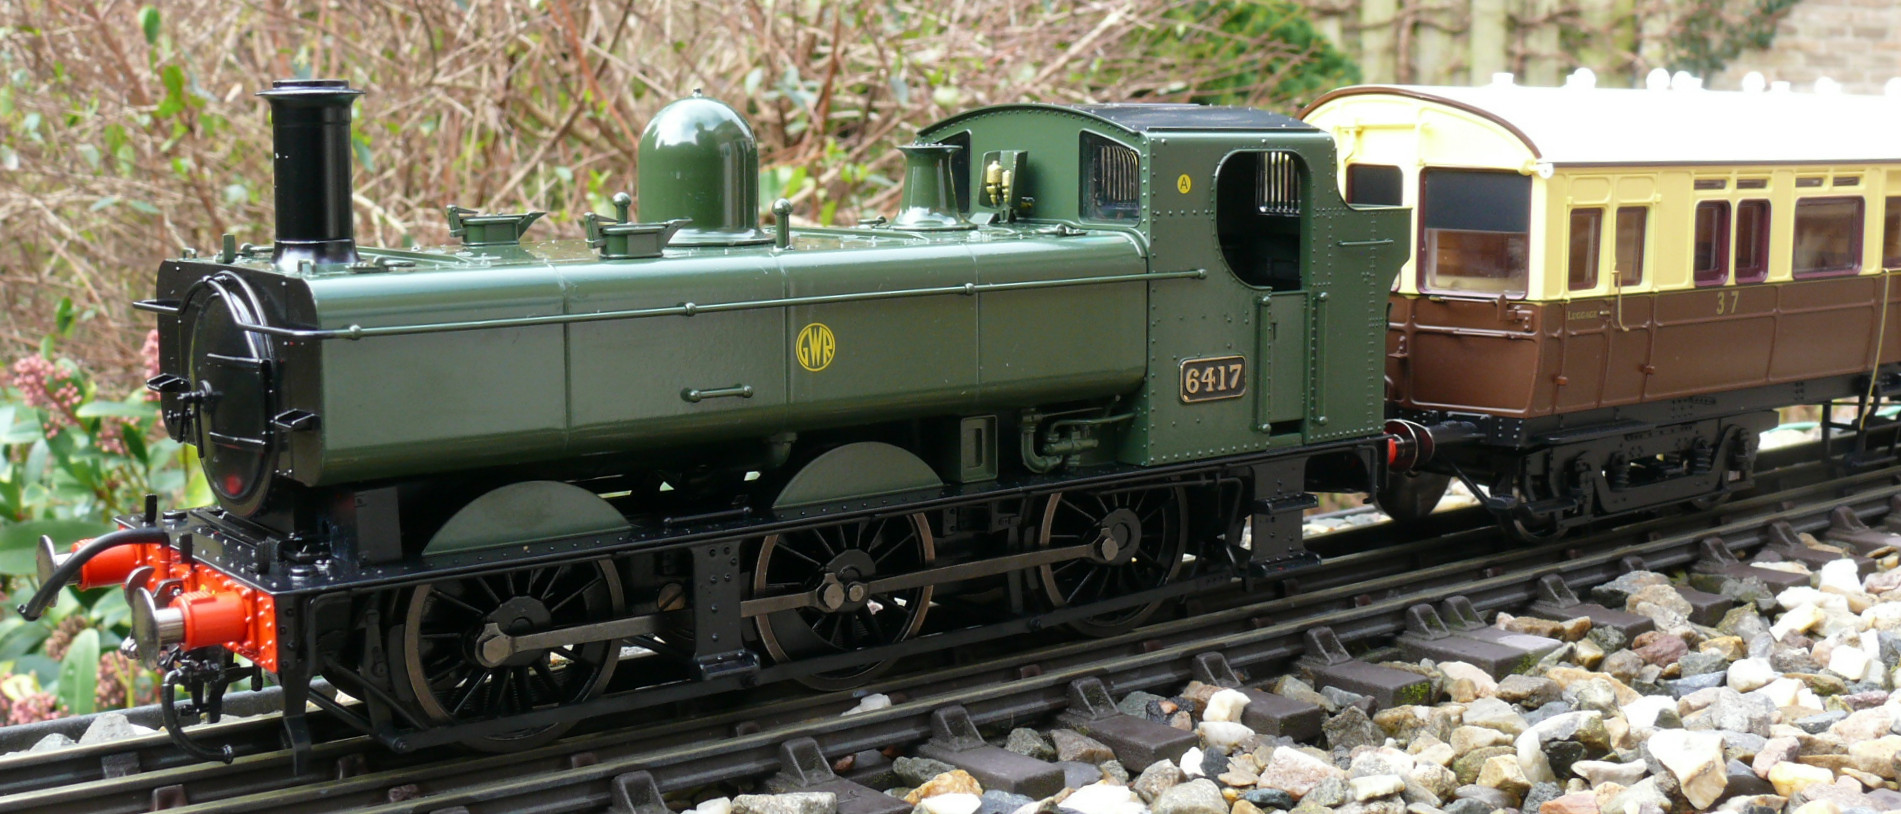 0 gauge model railway